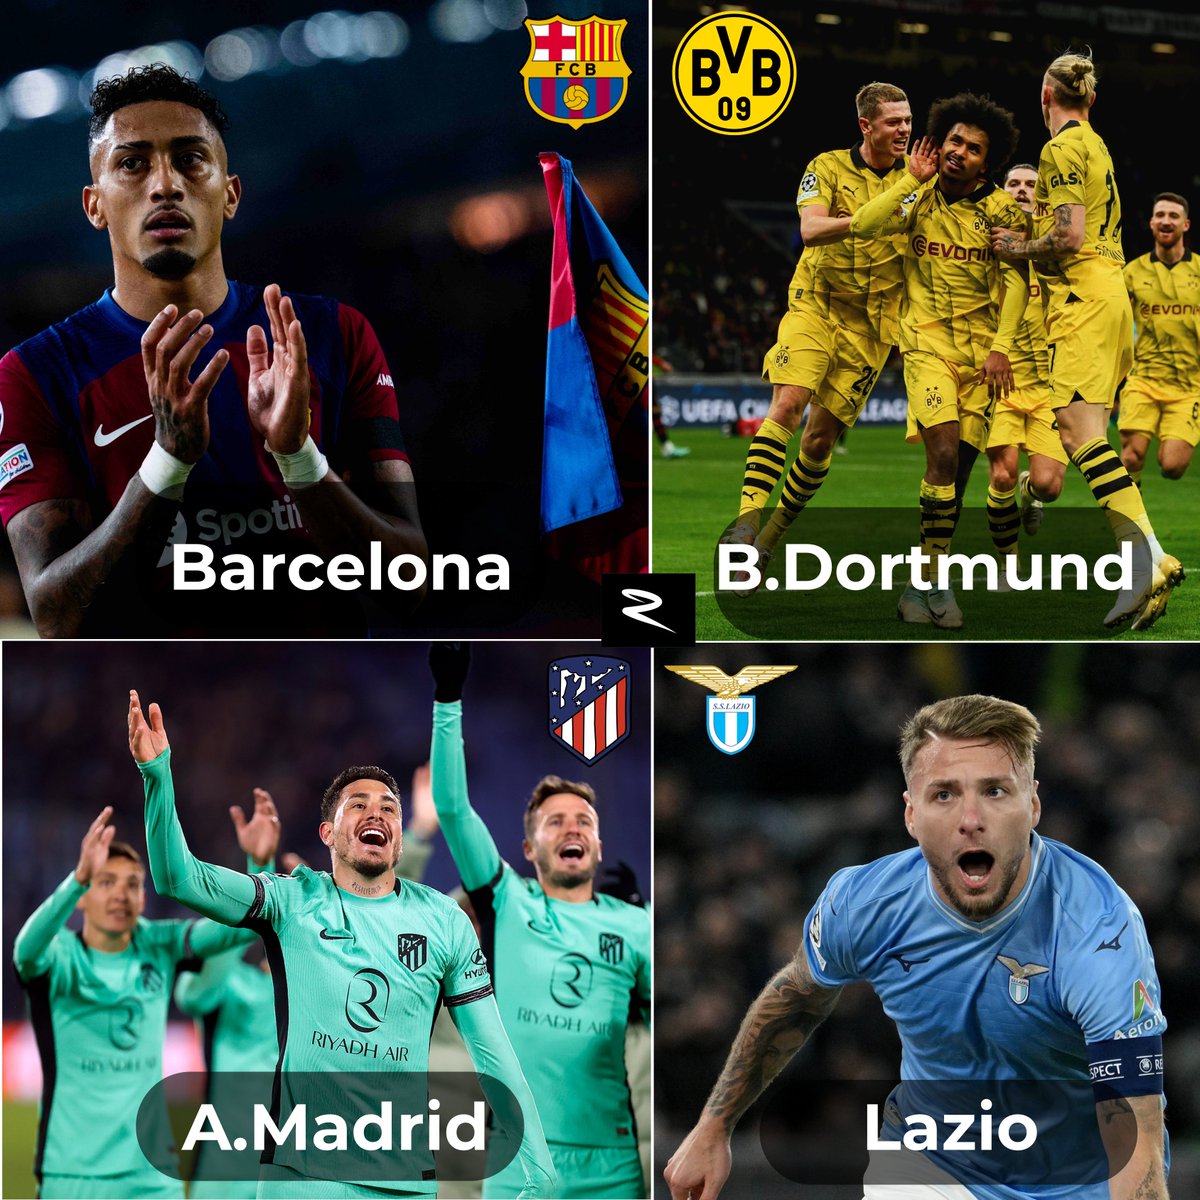 #UCL Şampiyonlar liginde gruptan çıkmayı garantileyen takımlar. 🇪🇸 Barcelona - Atletico Madrid 🇩🇪 Borussia Dortmund 🇮🇹 Lazio #SampiyonlarLigi